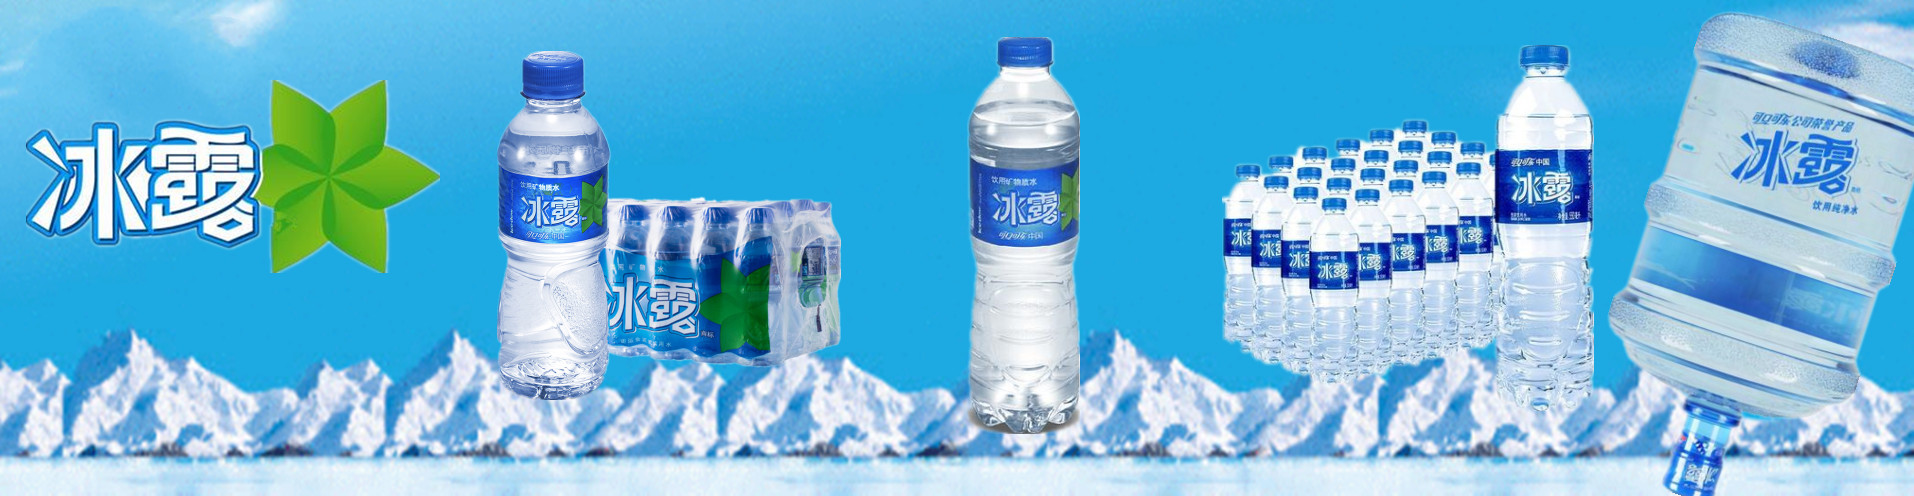 冰露瓶装水